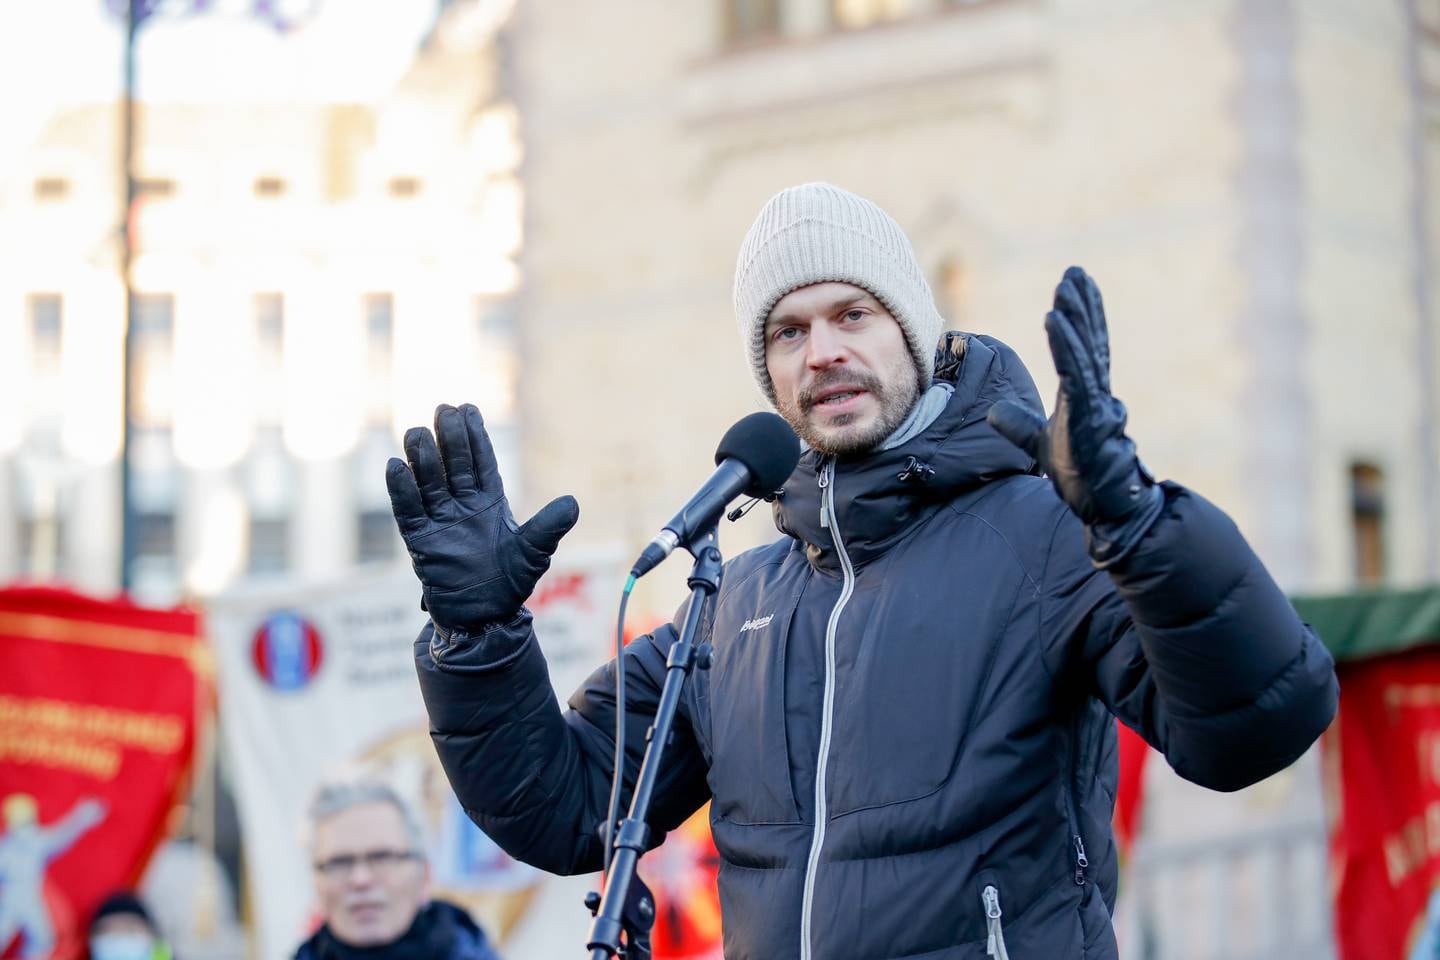 Leder for Rødt, Bjørnar Moxnes, holdt tale under en demonstrasjon mot høye strømpriser utenfor Stortinget.
Foto: Javad Parsa / NTB